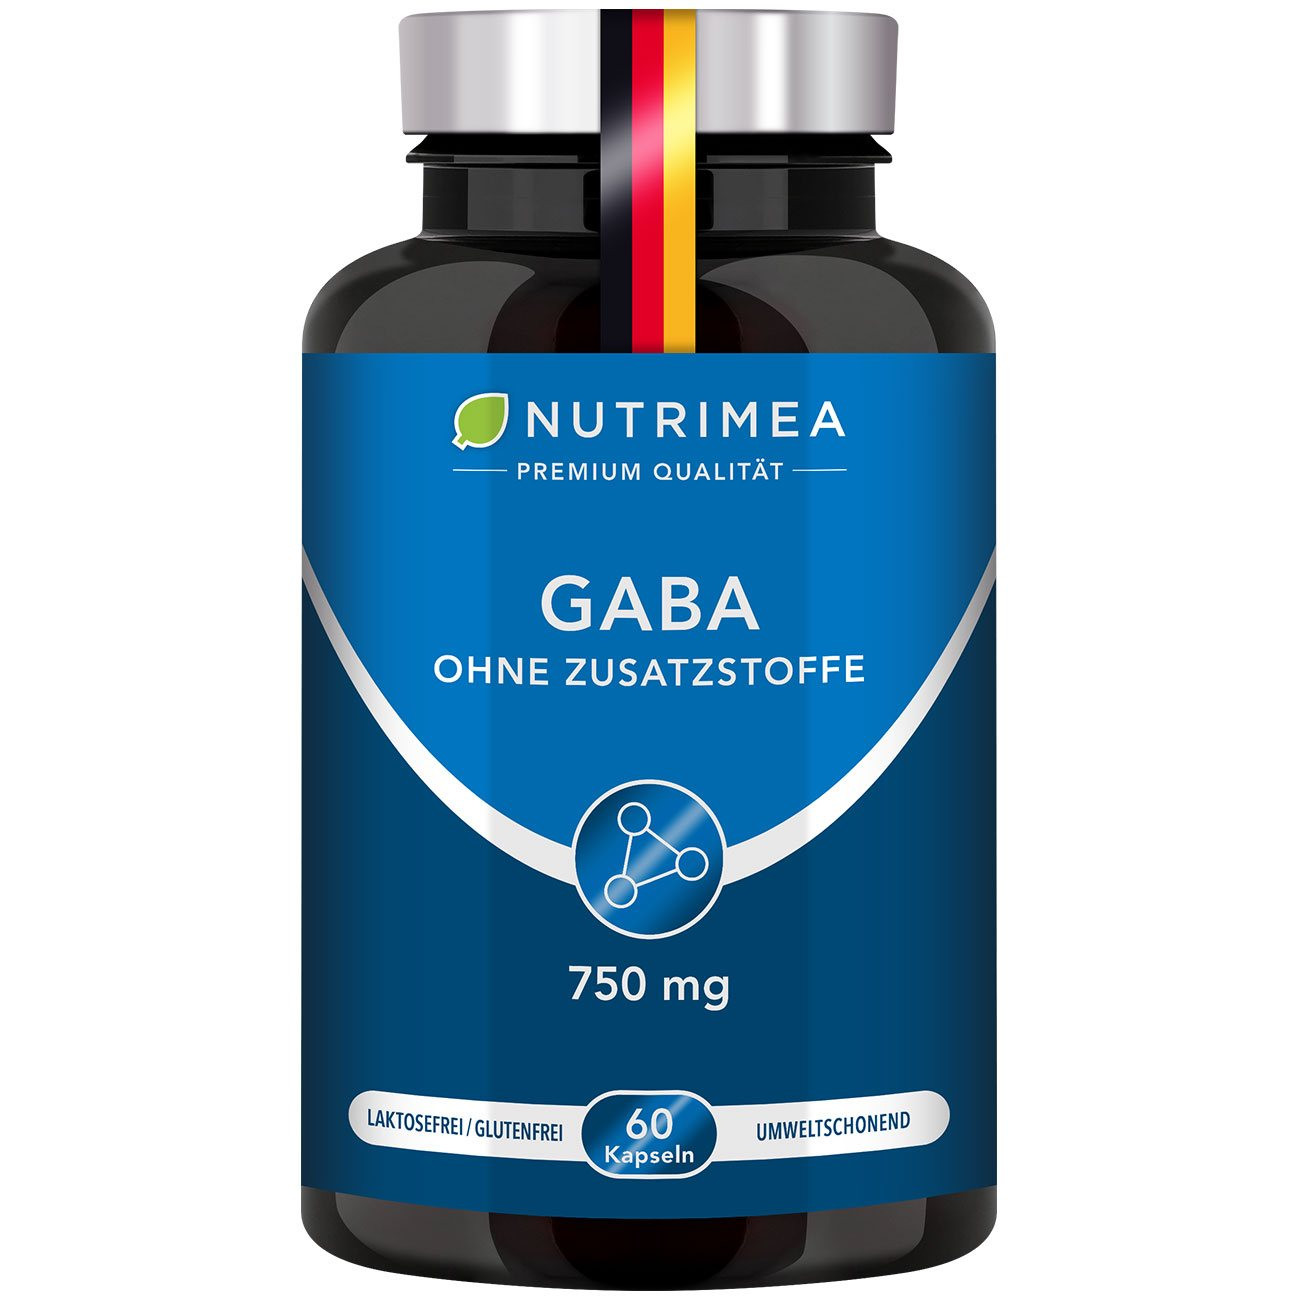 Bild der Verpackung des Supplements GABA